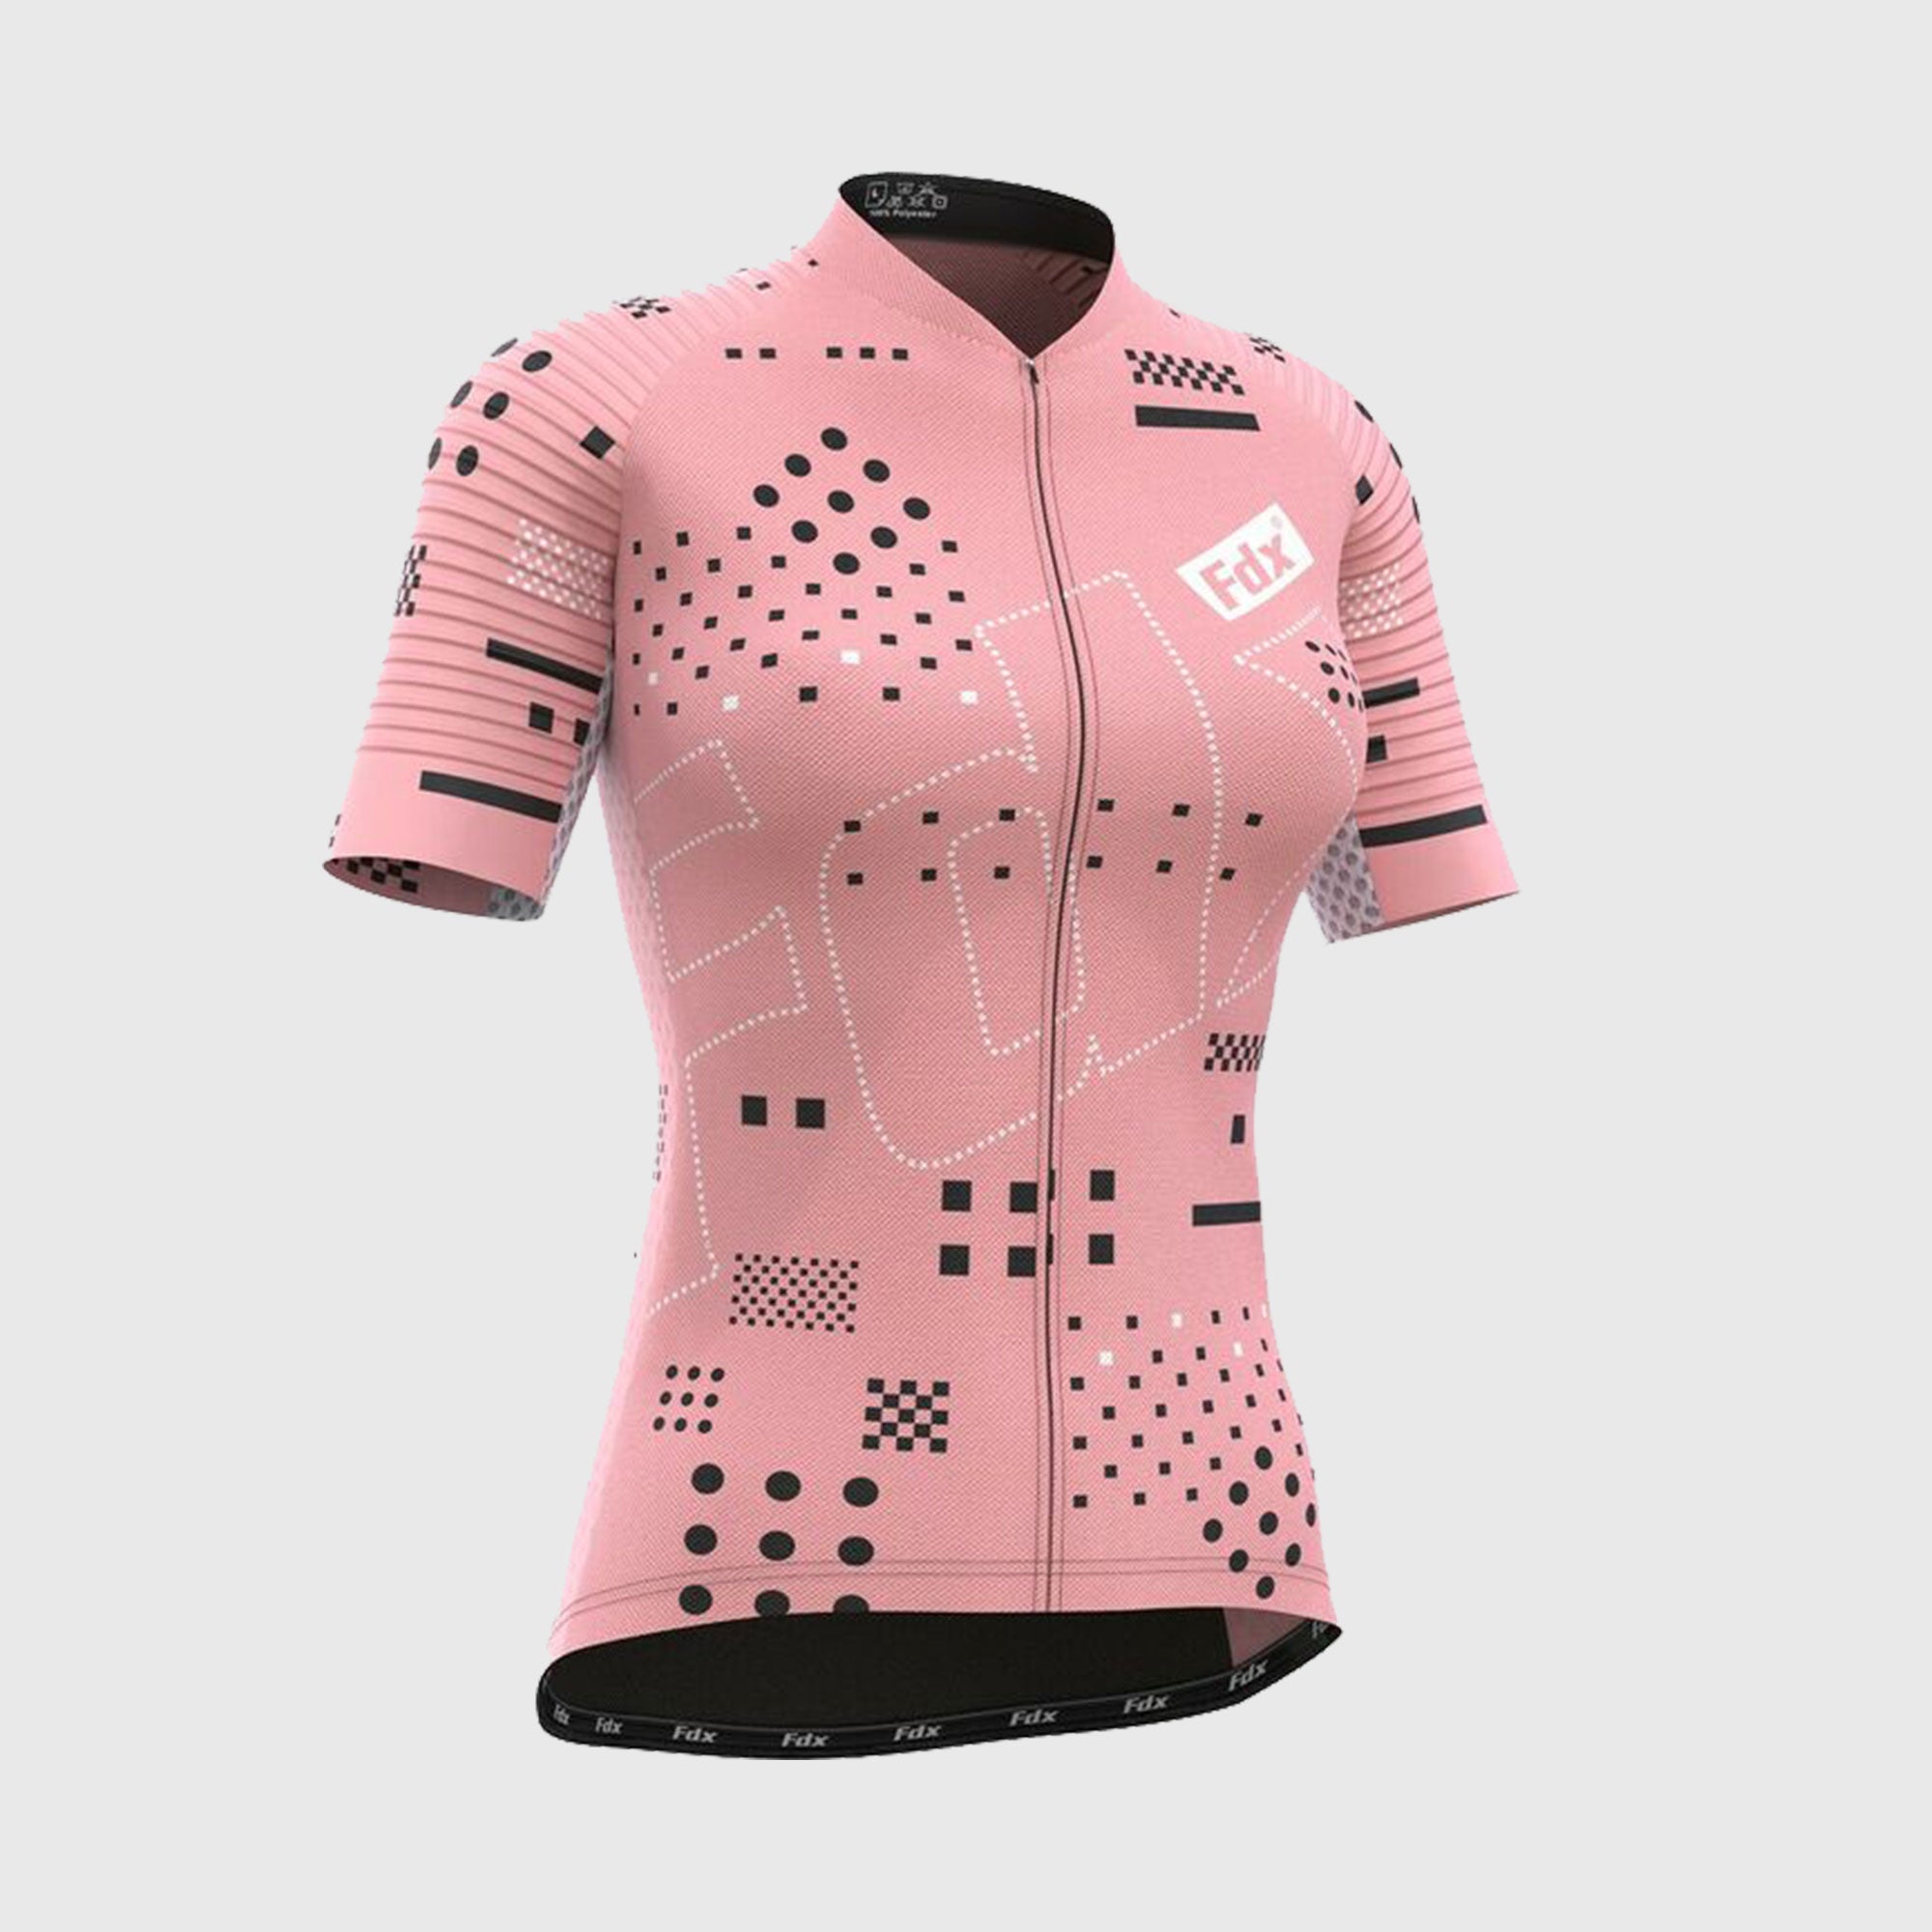 Fdx Women's Tea pink Short Sleeve Cycling Jersey for Summer Best Road Bike Wear Top Light Weight, Full Zipper, Pockets & Hi-viz Reflectors - All Day